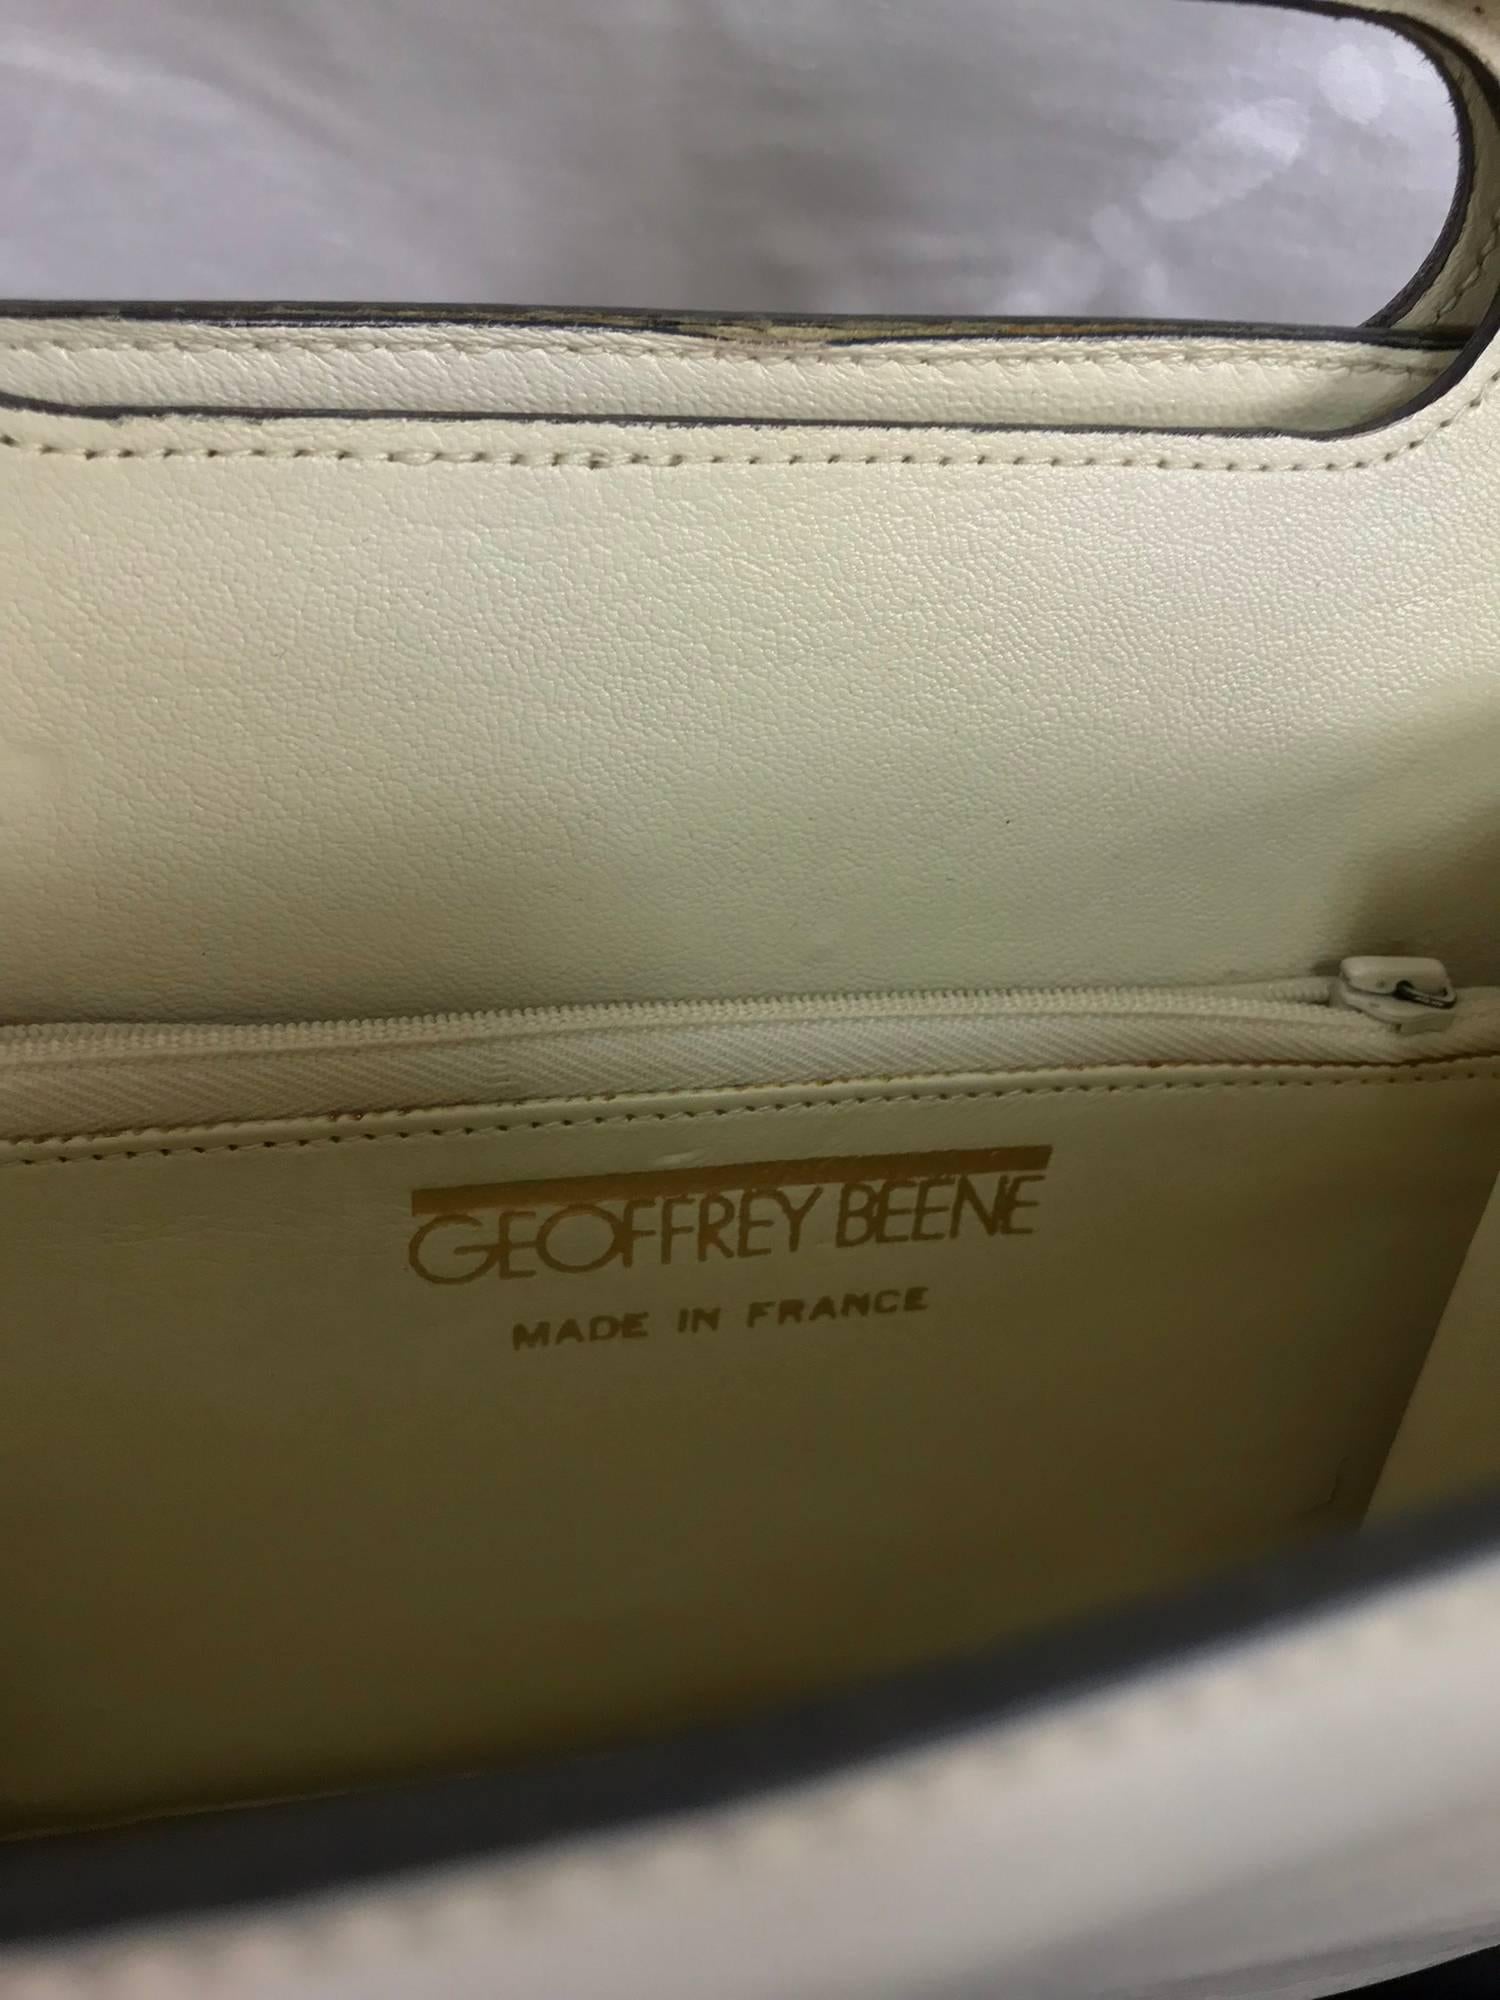 Vintage Geoffrey Beene bone leather gold hardware shoulder bag 1970s 1